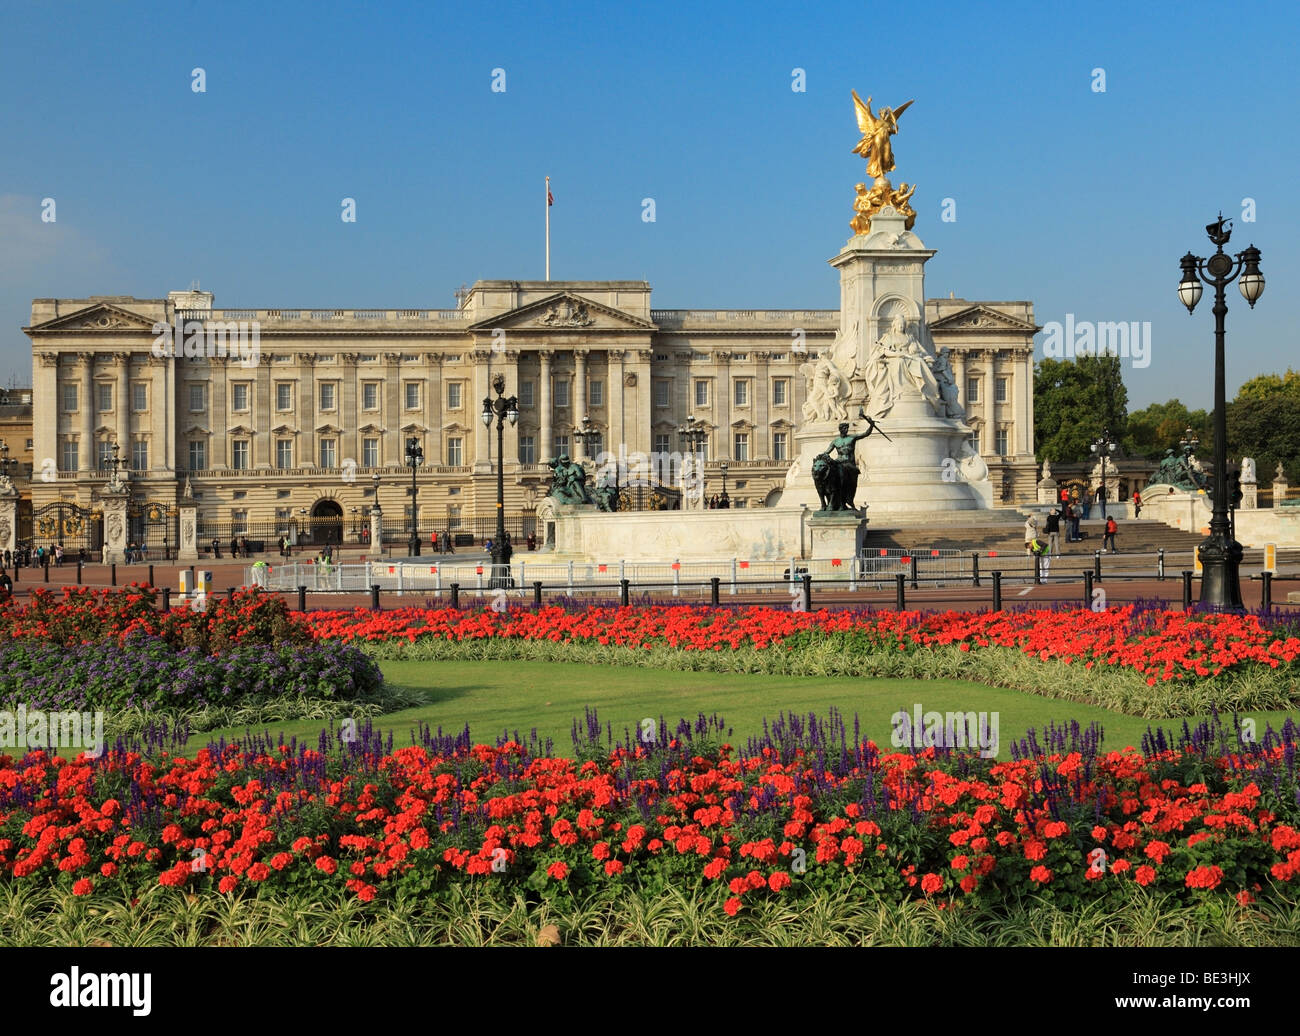 Buckingham Palace, London, England, UK Stock Photo